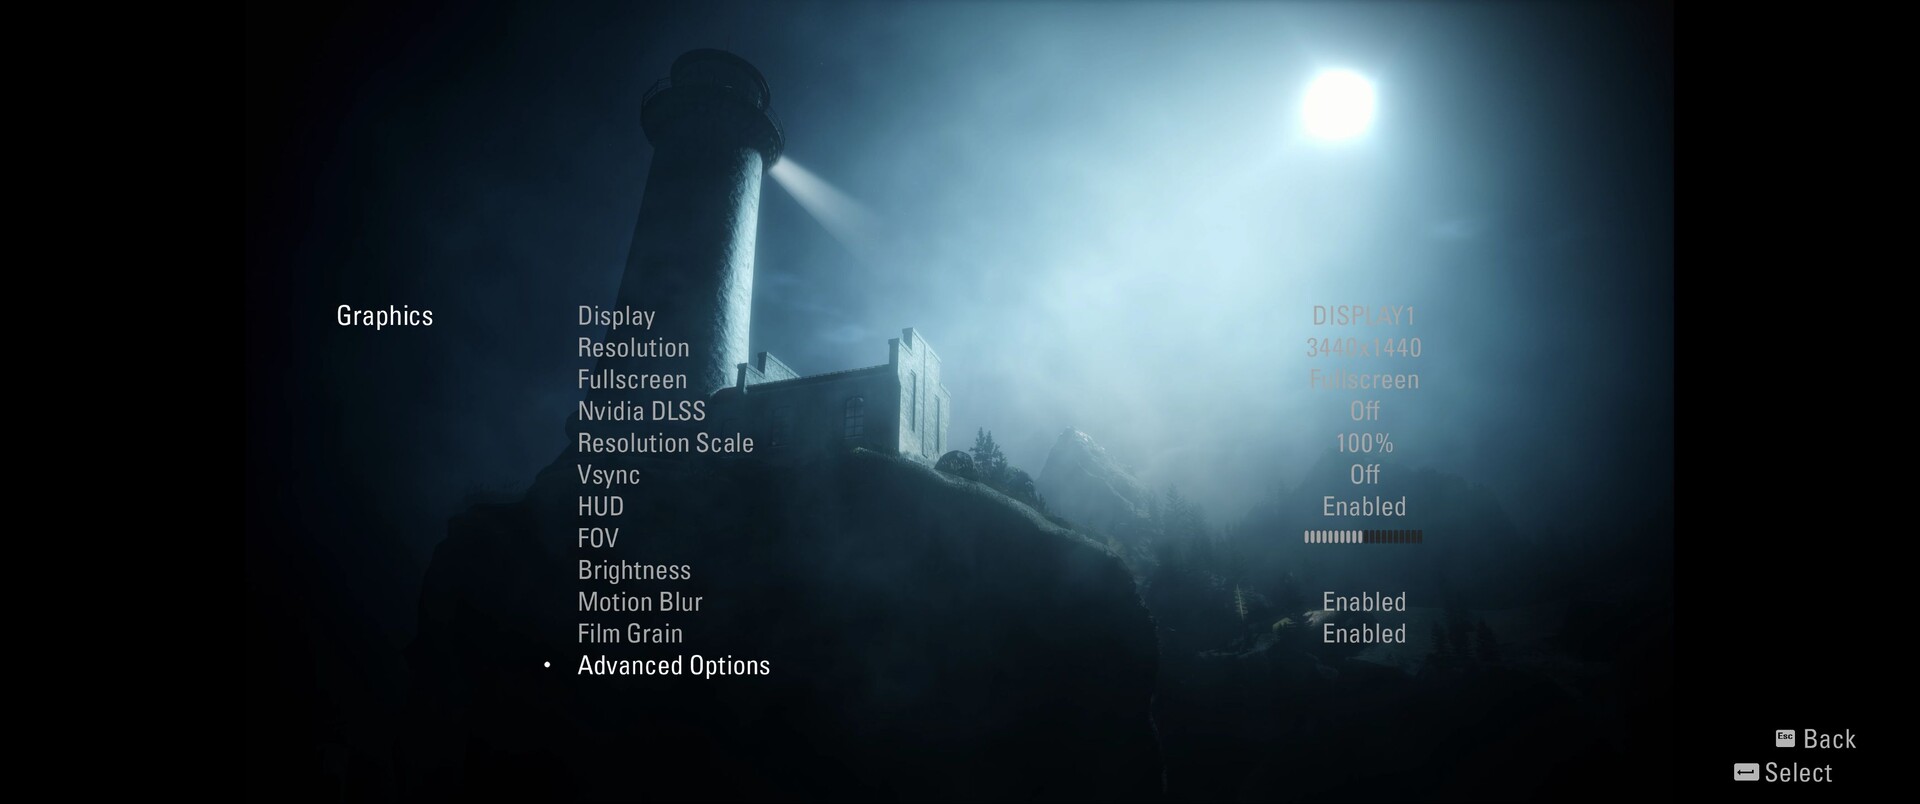 Alan Wake Remastered PC Performance Analysis